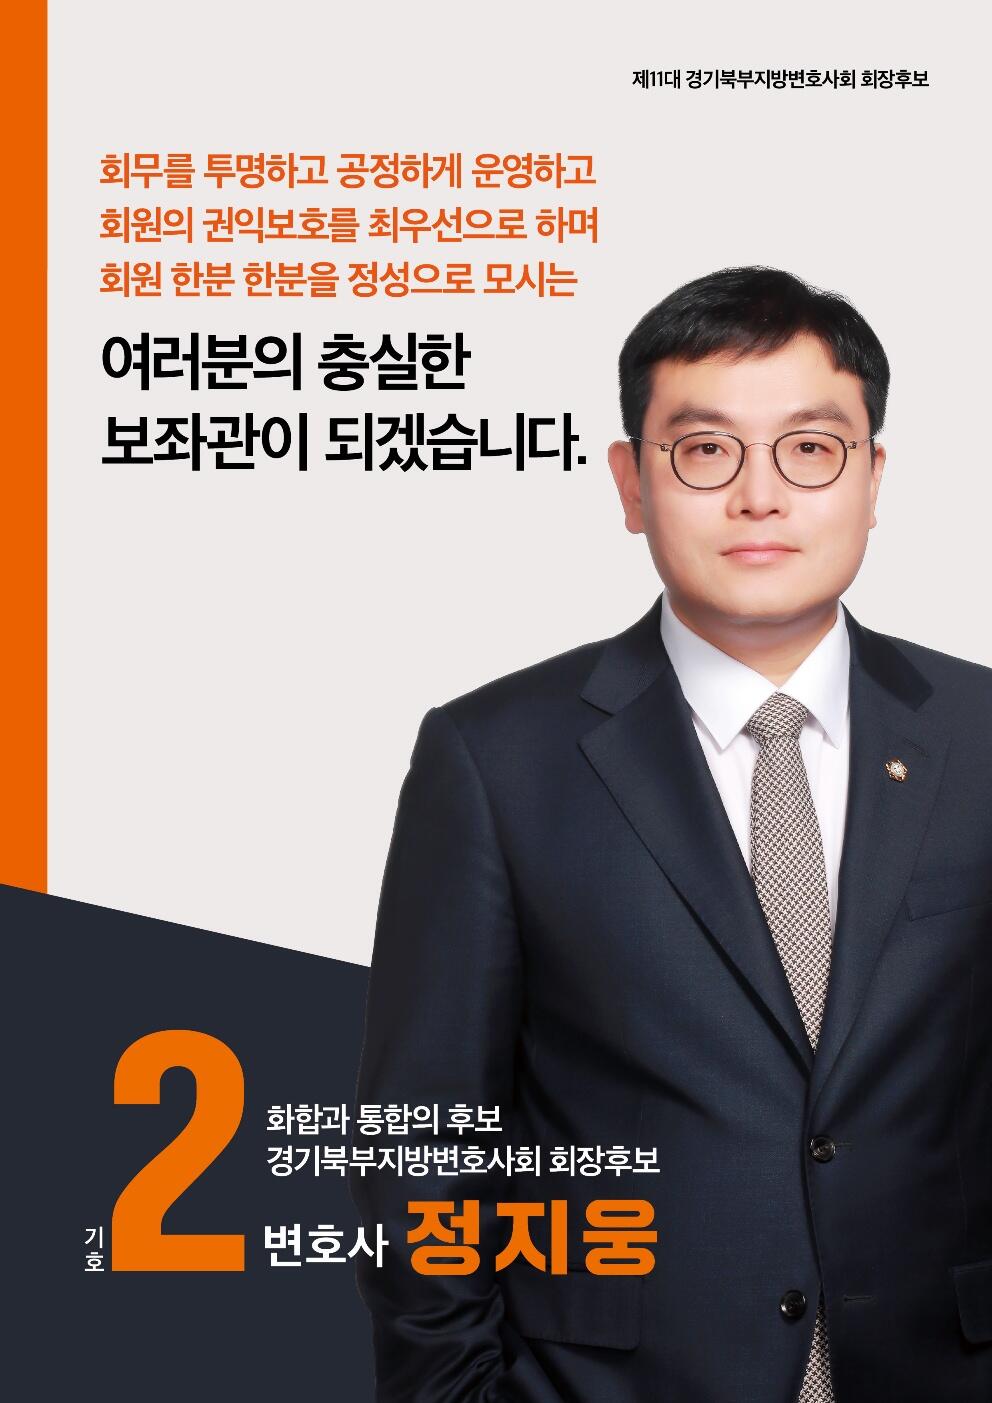 경기북부지방변호사회 회장에 당선된 정지웅 변호사